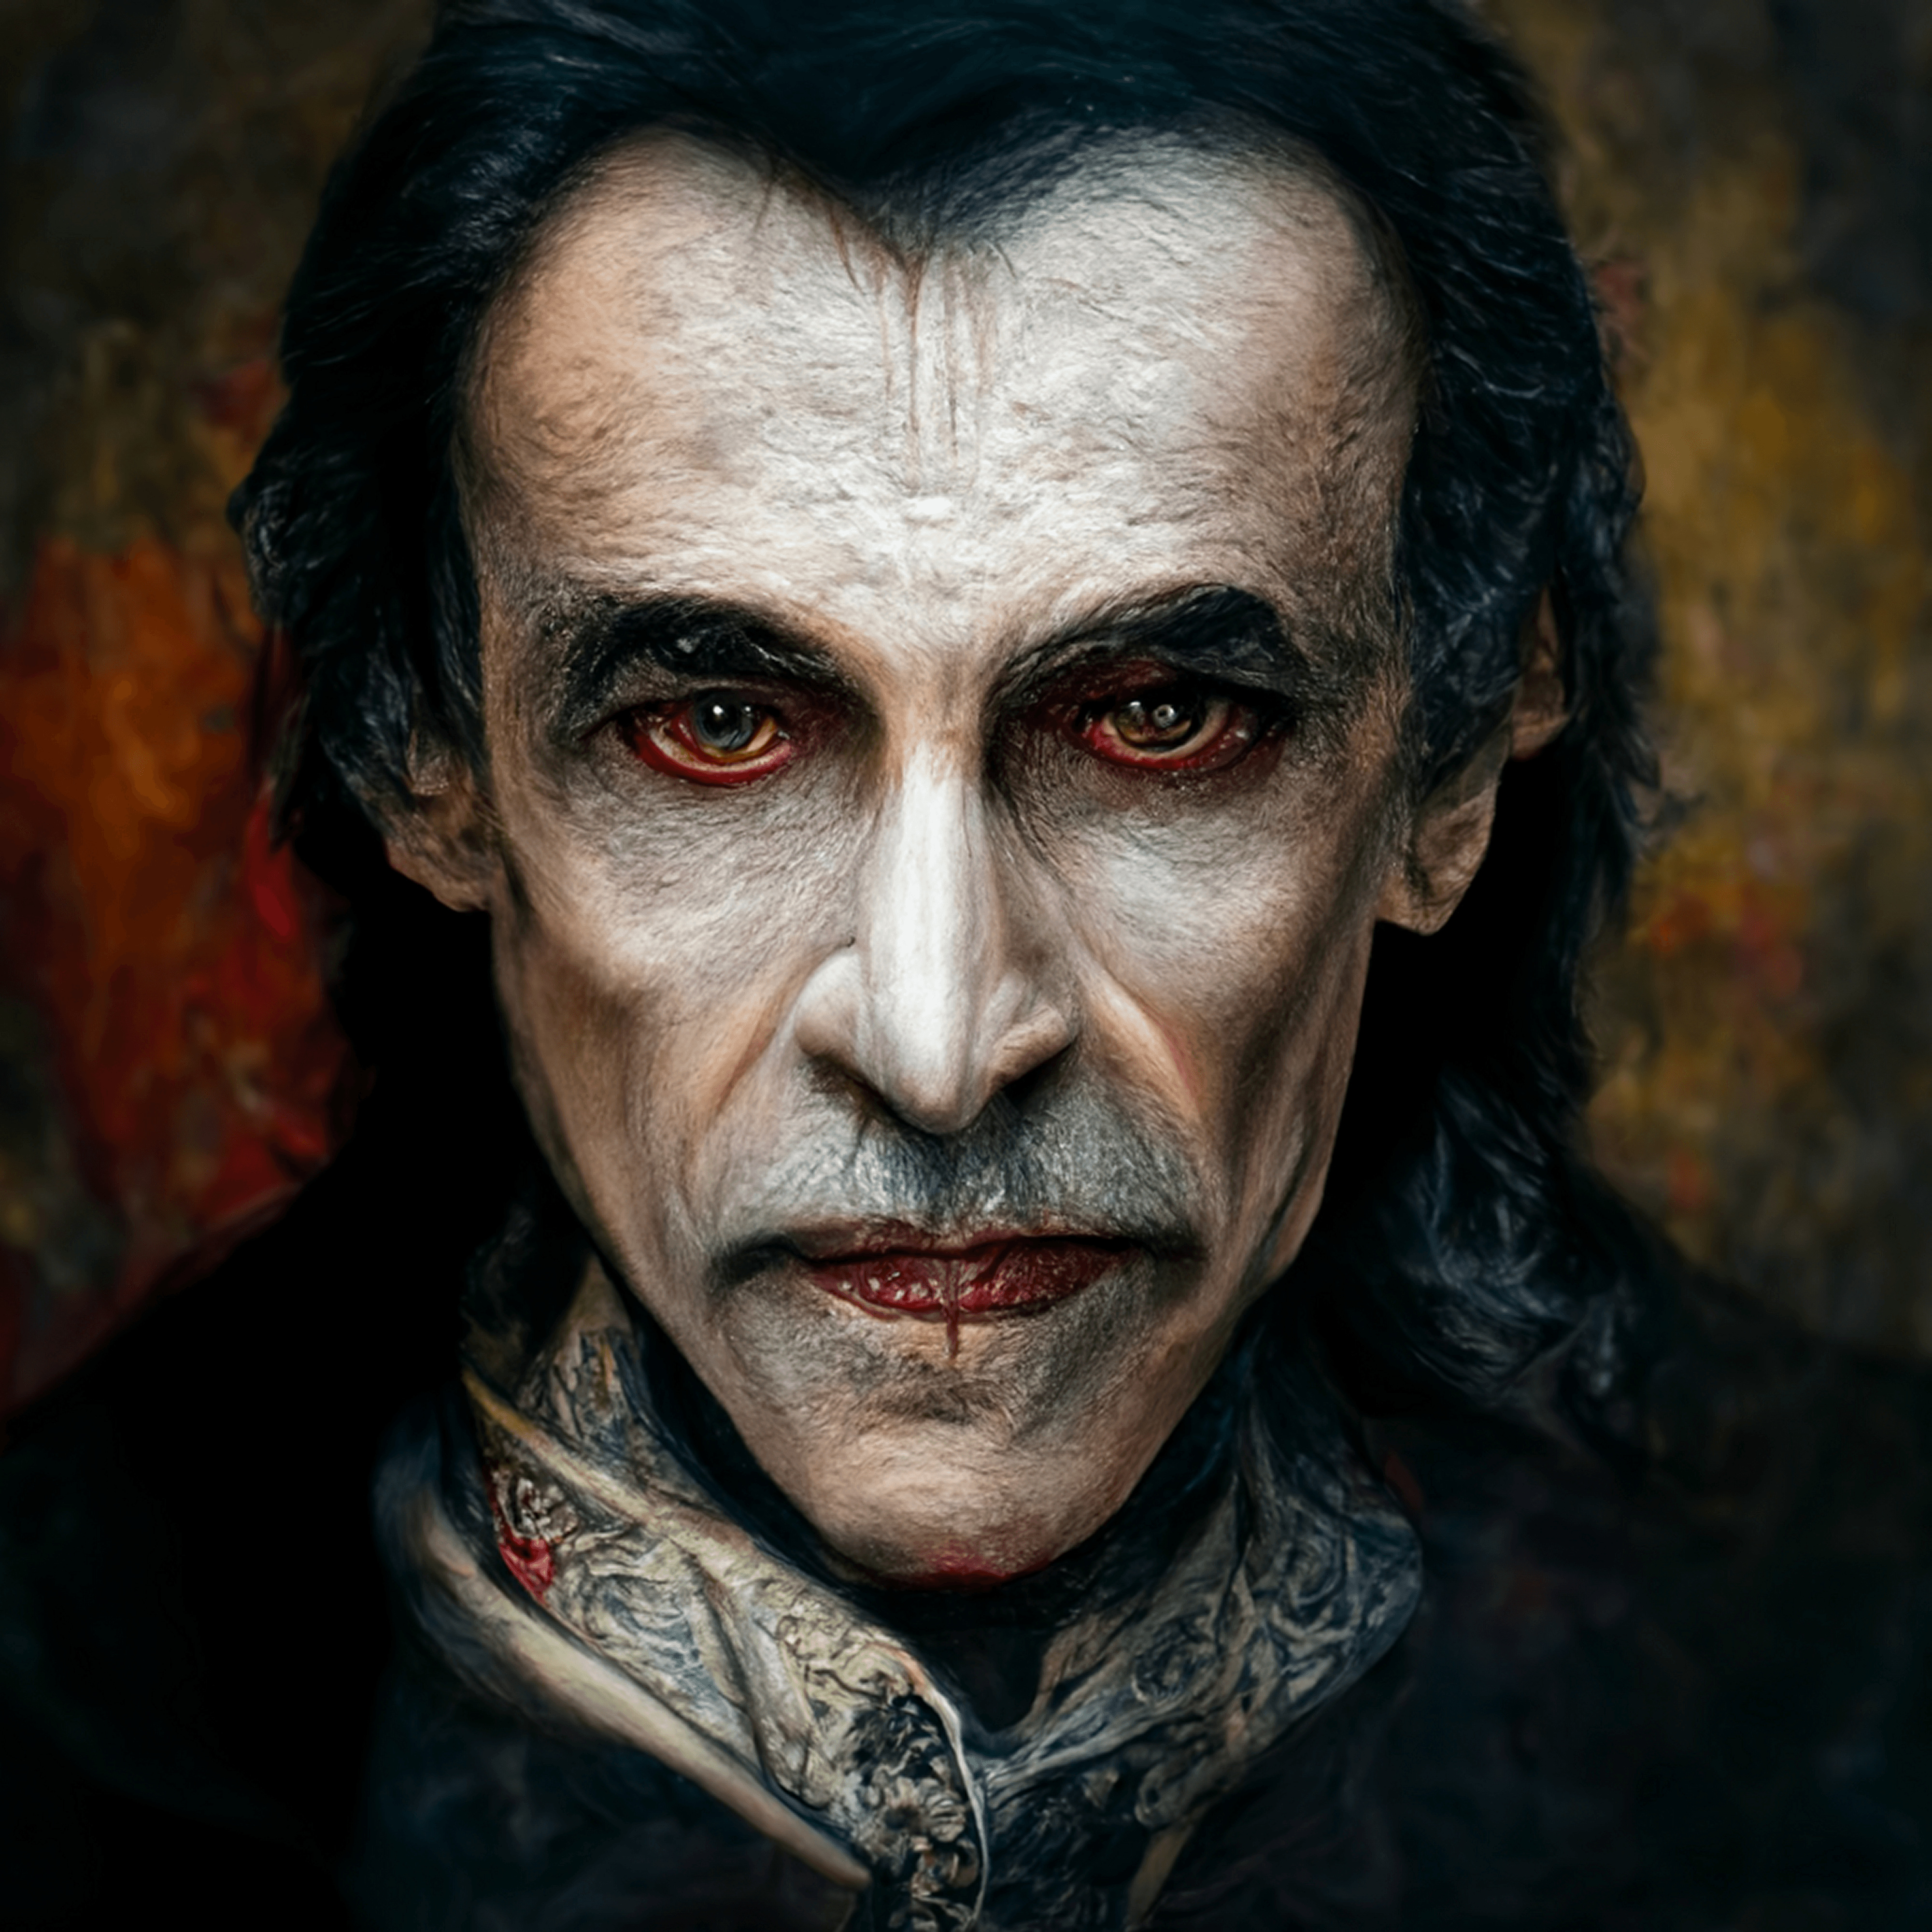 Dracula Dark Art NFT by Sollog 1/1